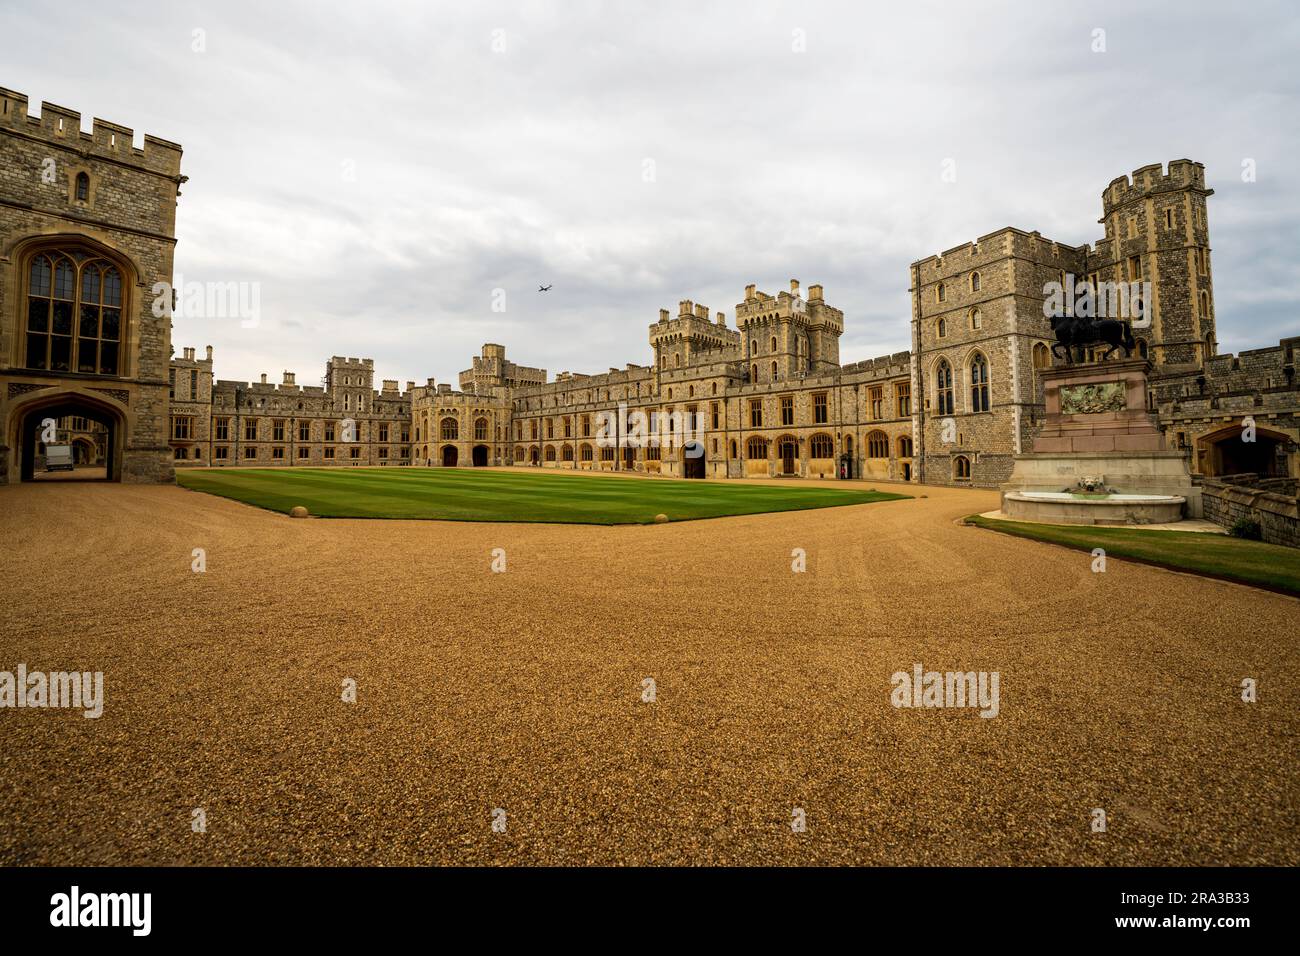 Le château de Windsor, une résidence royale à Windsor en Angleterre, est le plus ancien et le plus grand château occupé dans le monde et le palais le plus occupé en Europe. Banque D'Images